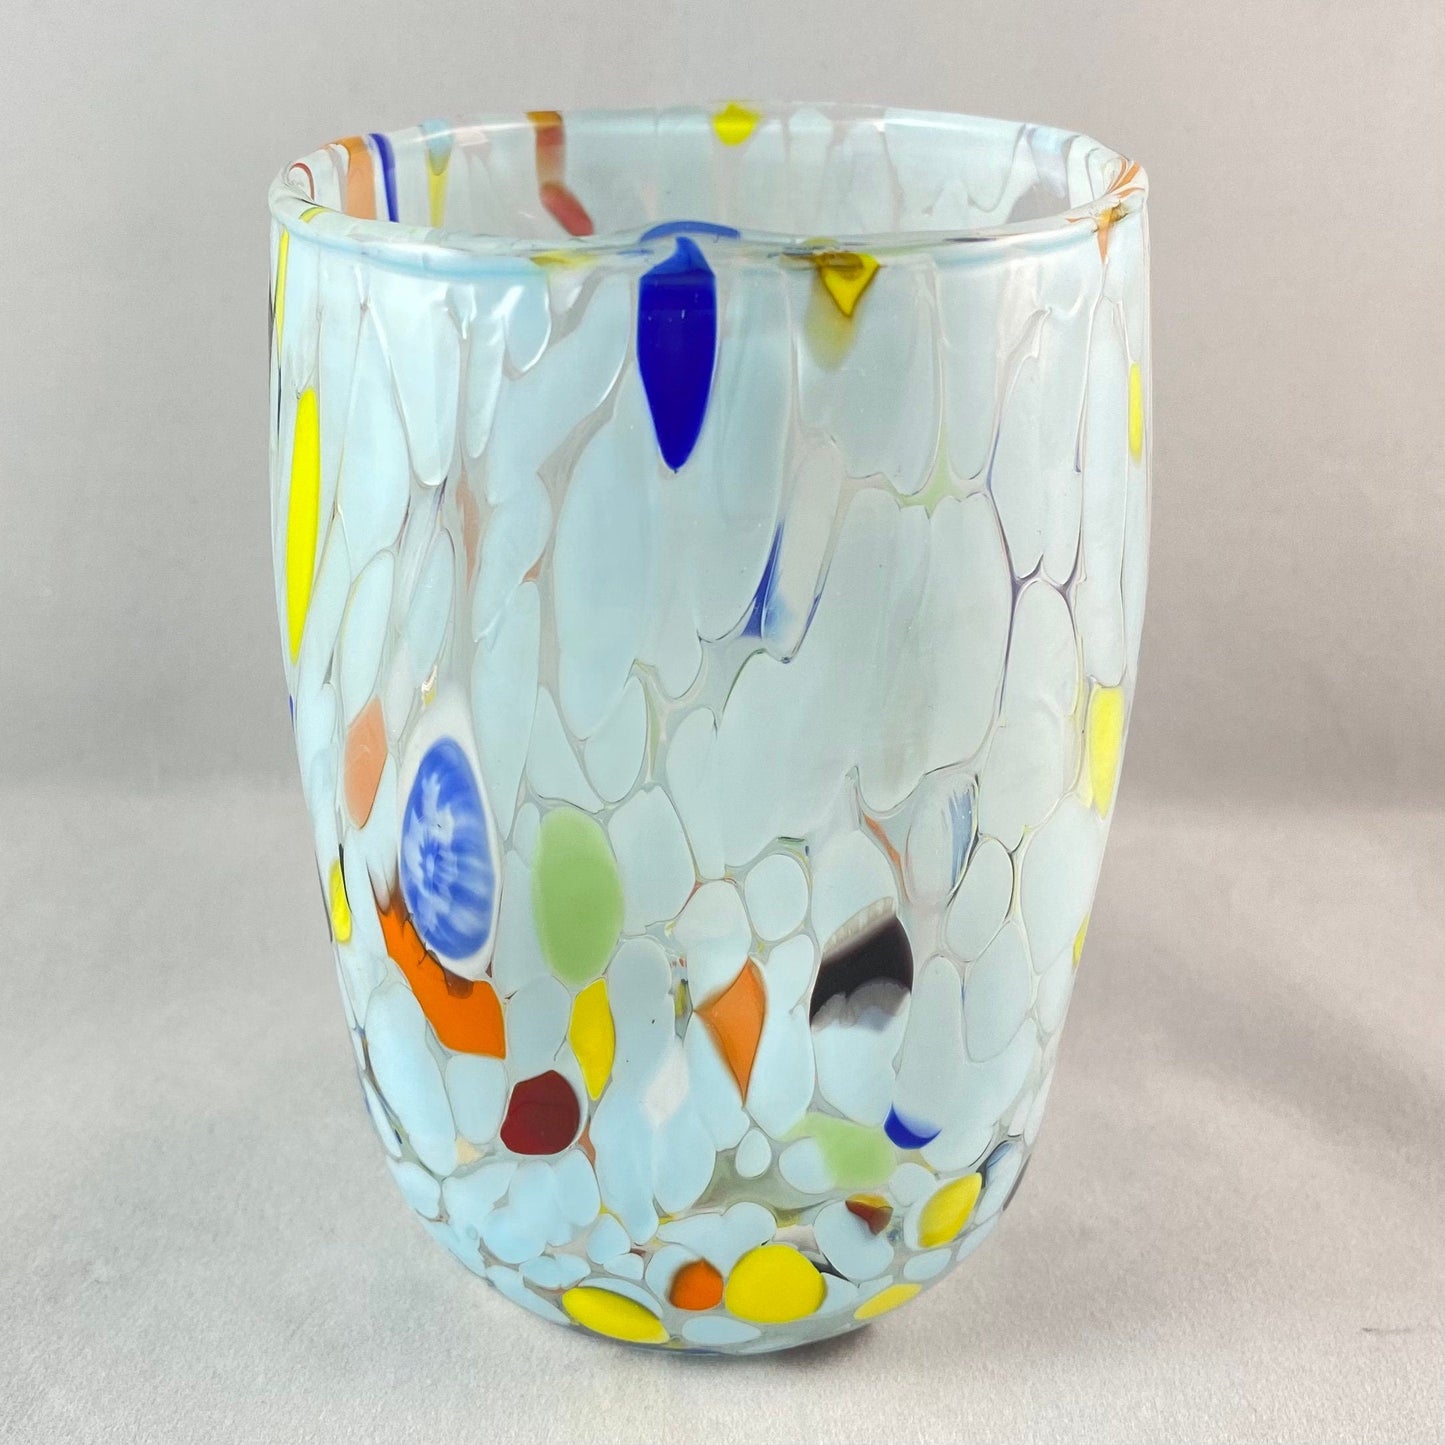 White Glass, Venetian Glass - Handmade in Italy, Colorful Murano Glass